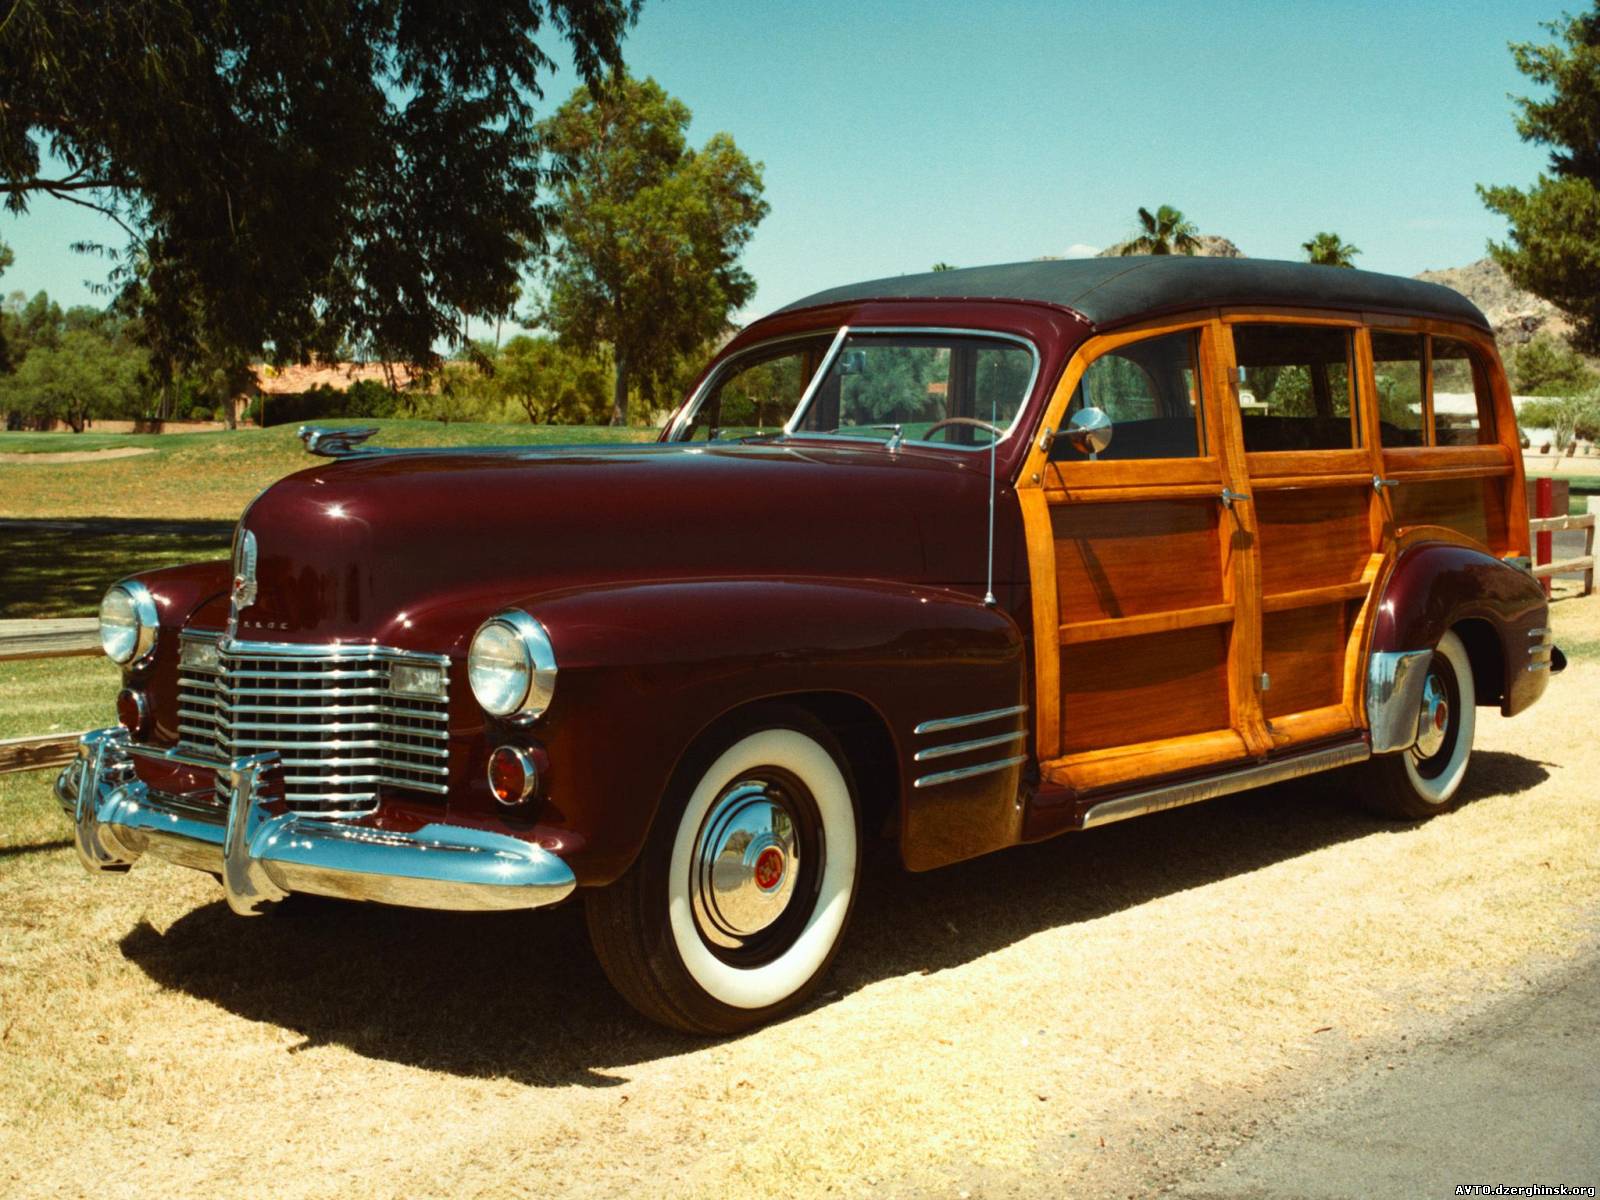 035. 1941 Cadillac Series 61 Station Wagon